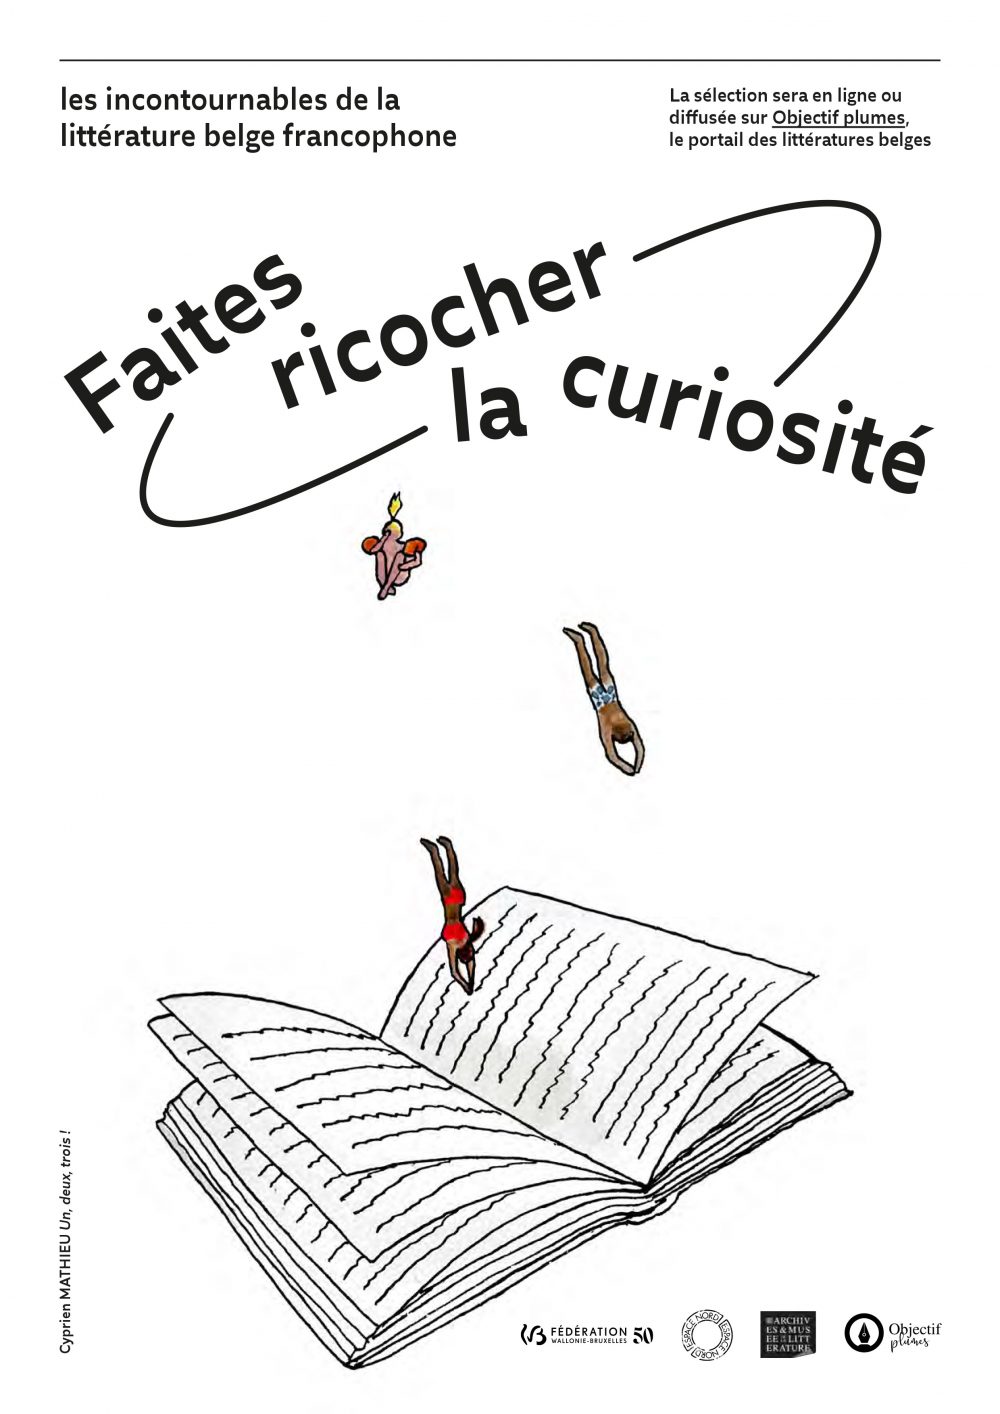 Les incontournables de la littérature belge francophone